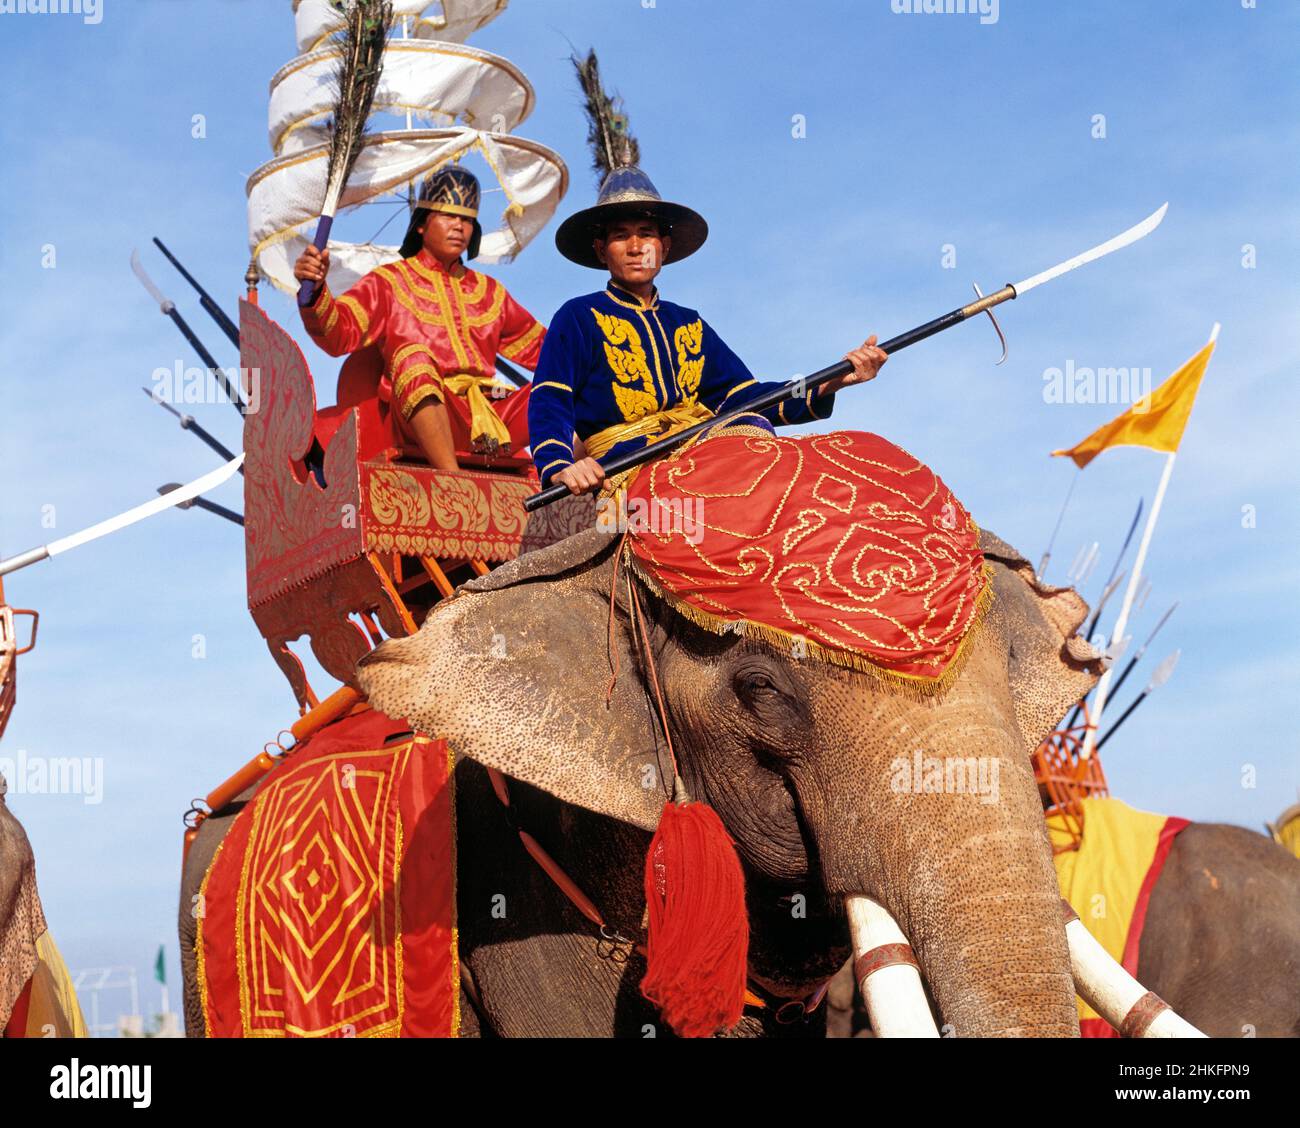 Thailand. Nakhon Pathom. Samphran Elephant Ground. Thai players riding on elephant in theme show. Stock Photo